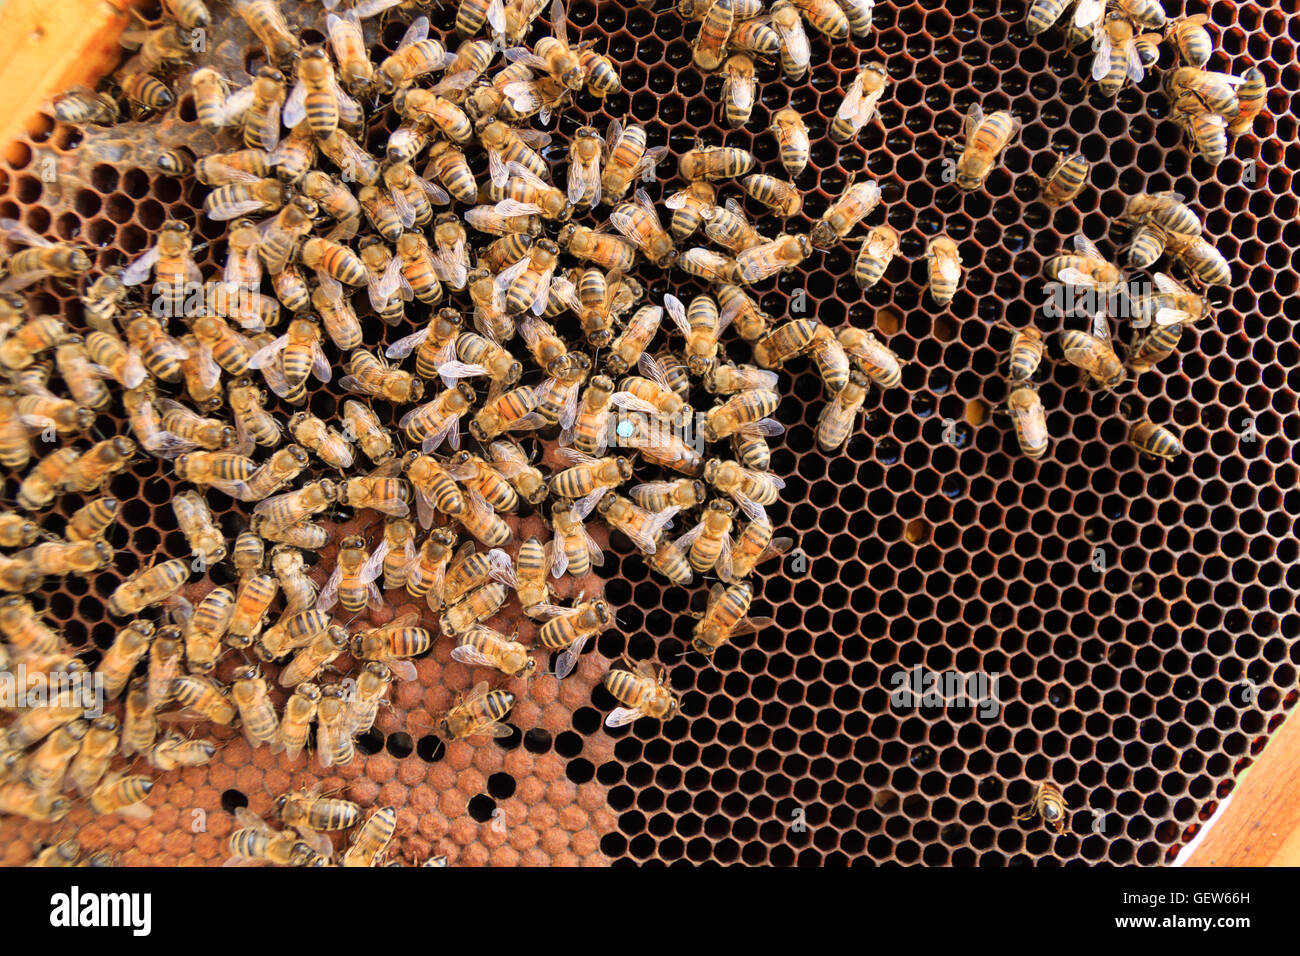 Queen bee detail. Apiculture, rural life.  Beekeeping Stock Photo